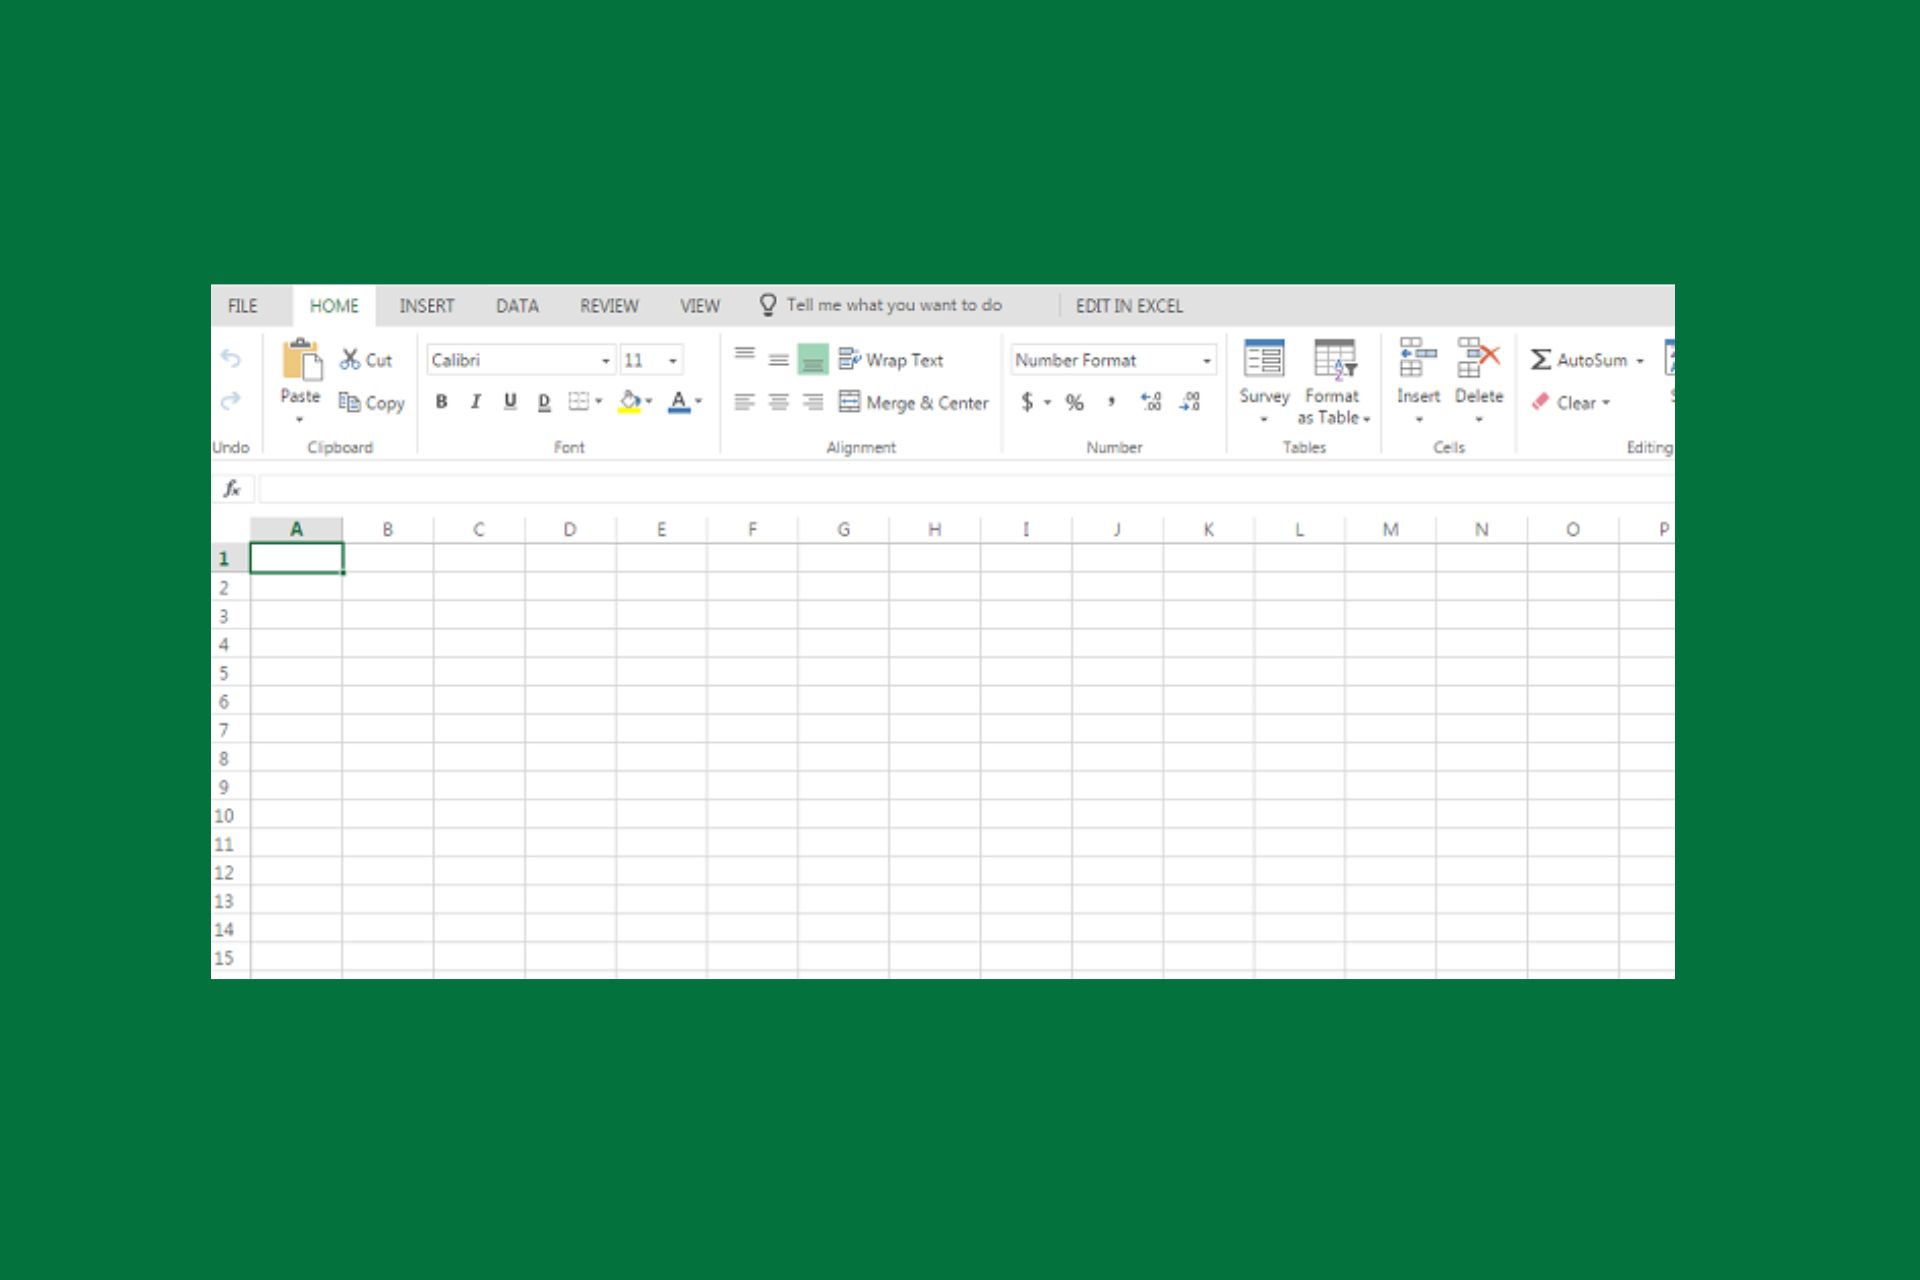 La tecla Esc deja de funcionar en Excel 365